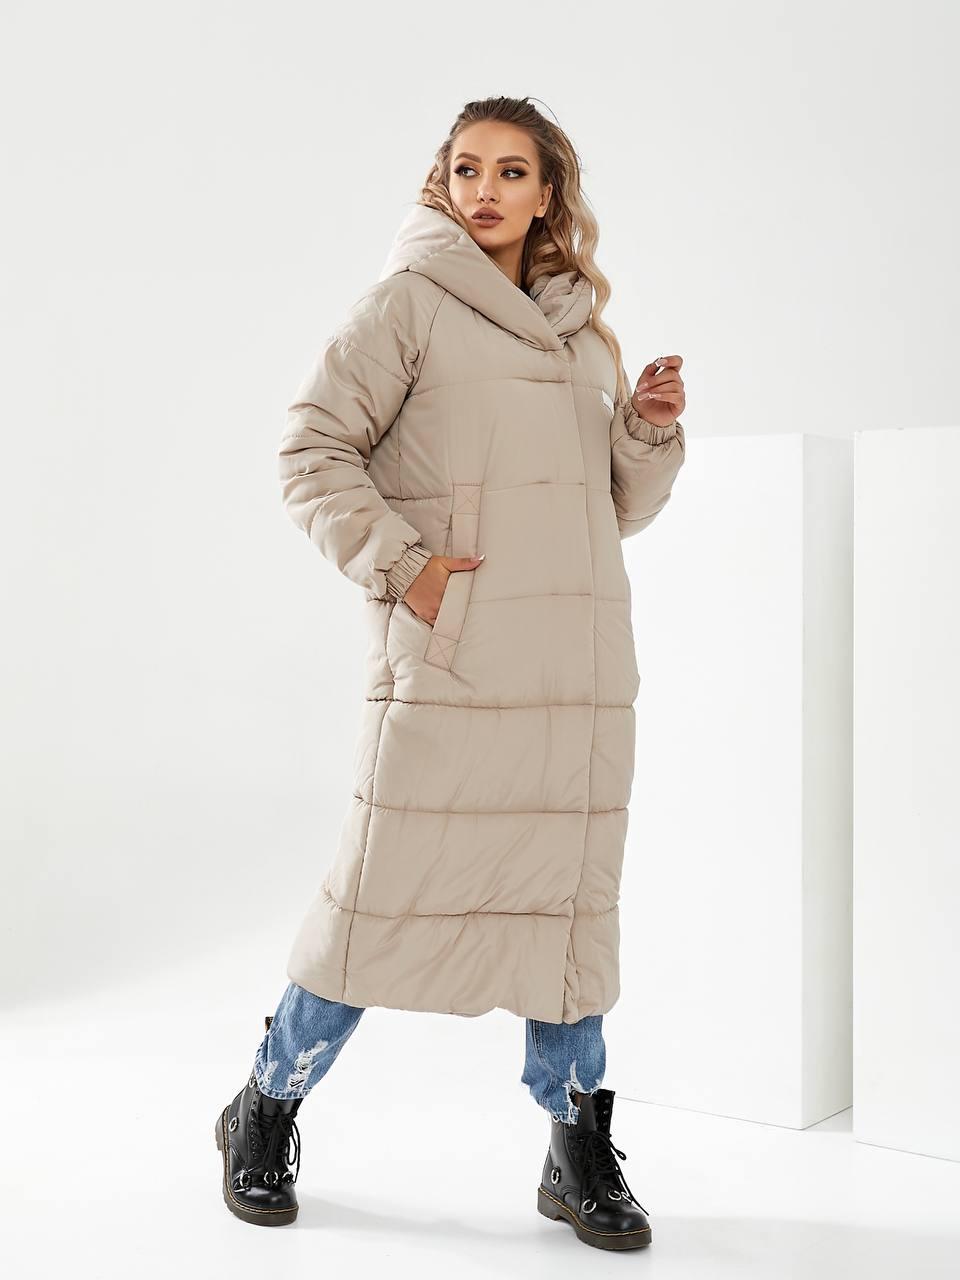 Пальто пуховик ковдра зима OVERSIZE з капюшоном арт. 520 айворі / молочного кольору